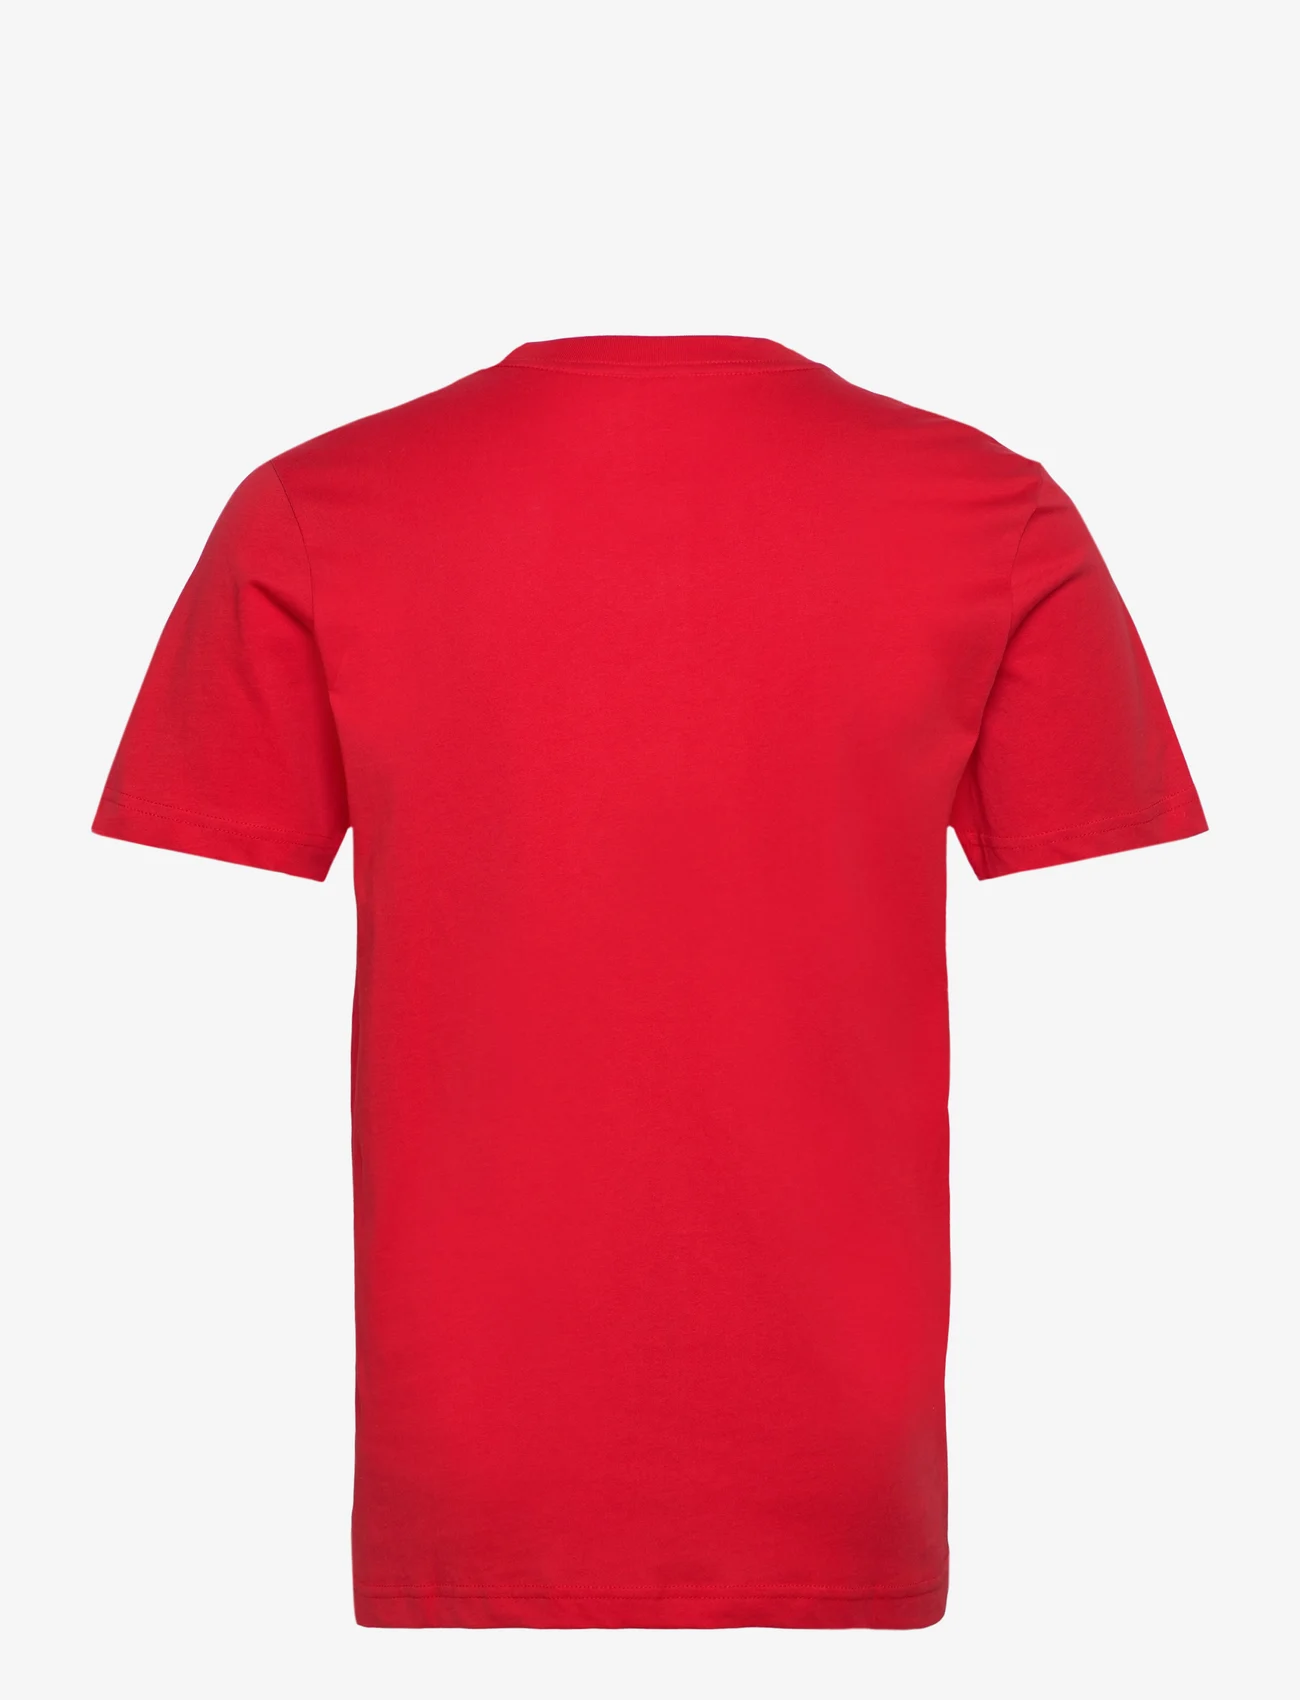 Fanatics - NFL Primary Logo Graphic T-Shirt - die niedrigsten preise - athletic red - 1